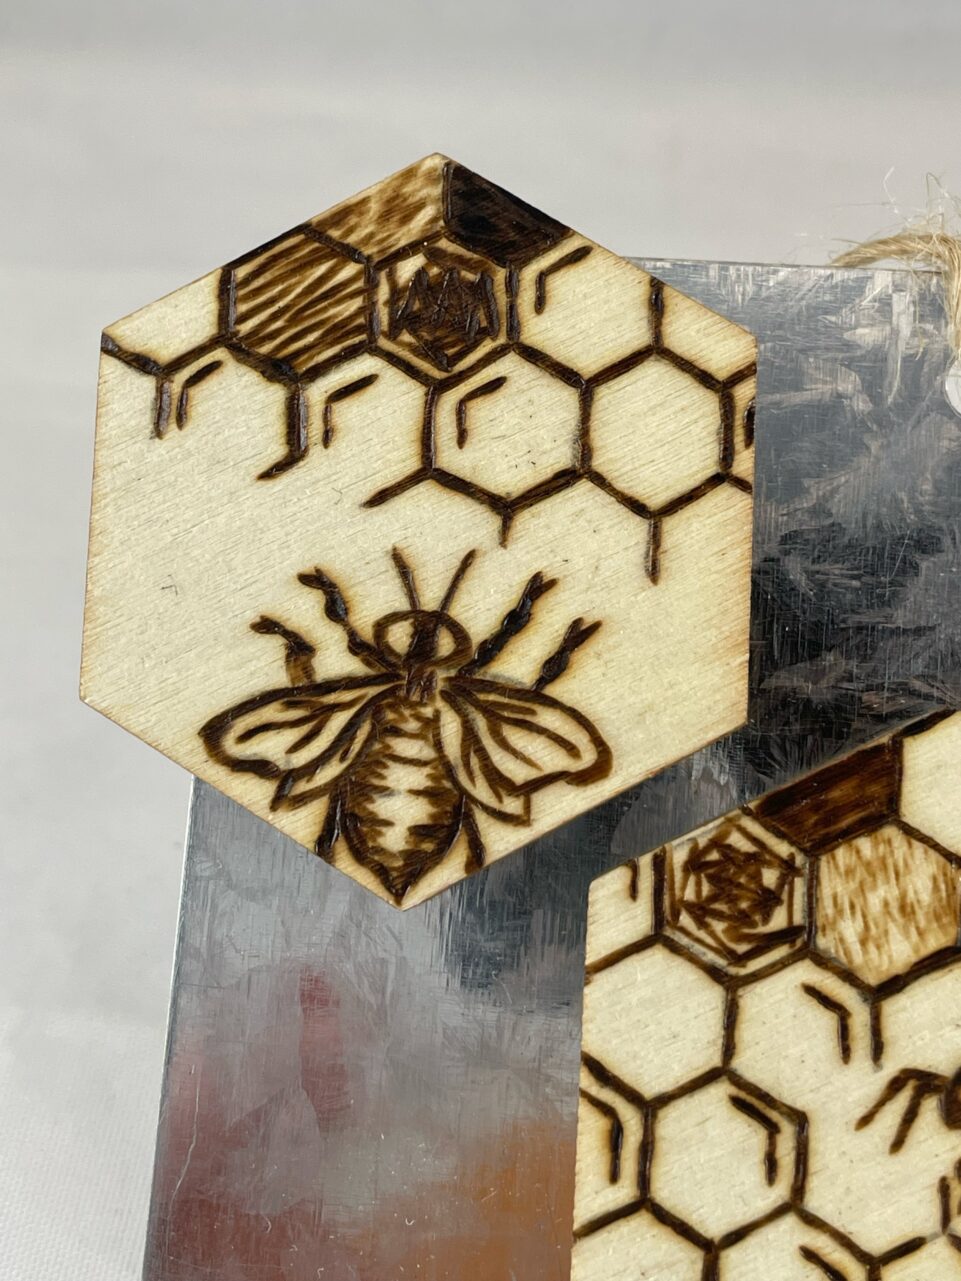 Mystic Honeybee Hexagon Wood Trivet – Shop Iowa